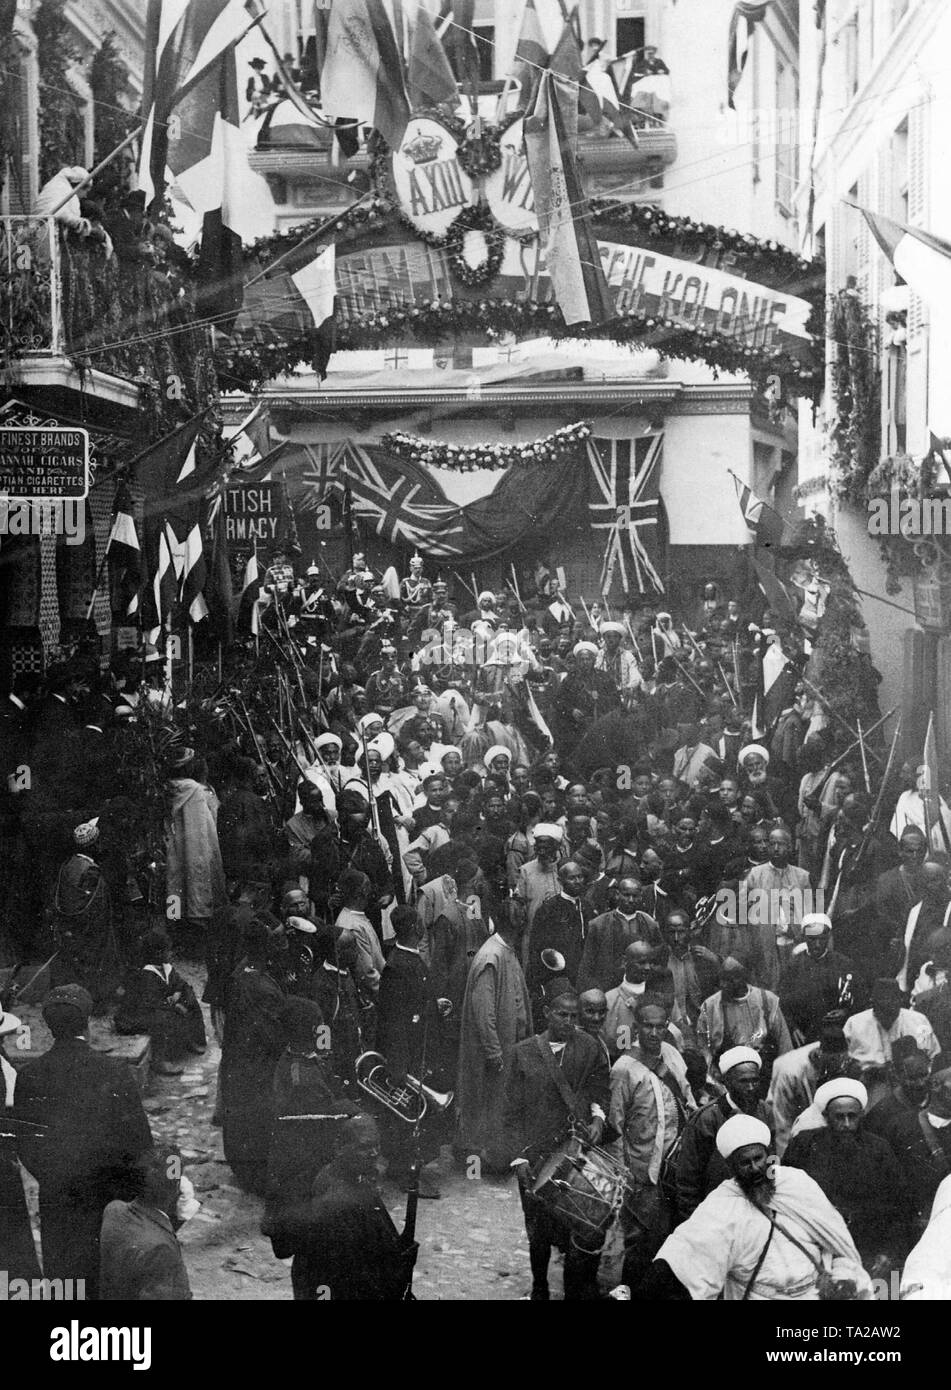 Kaiser Guillaume II d'Allemagne lors de sa visite à Tanger, Maroc, 1905. Au premier plan, l'Arc de triomphe construit par la colonie allemande, dans l'arrière-plan de la bannière de bienvenue les habitants anglais de Tanger. Banque D'Images